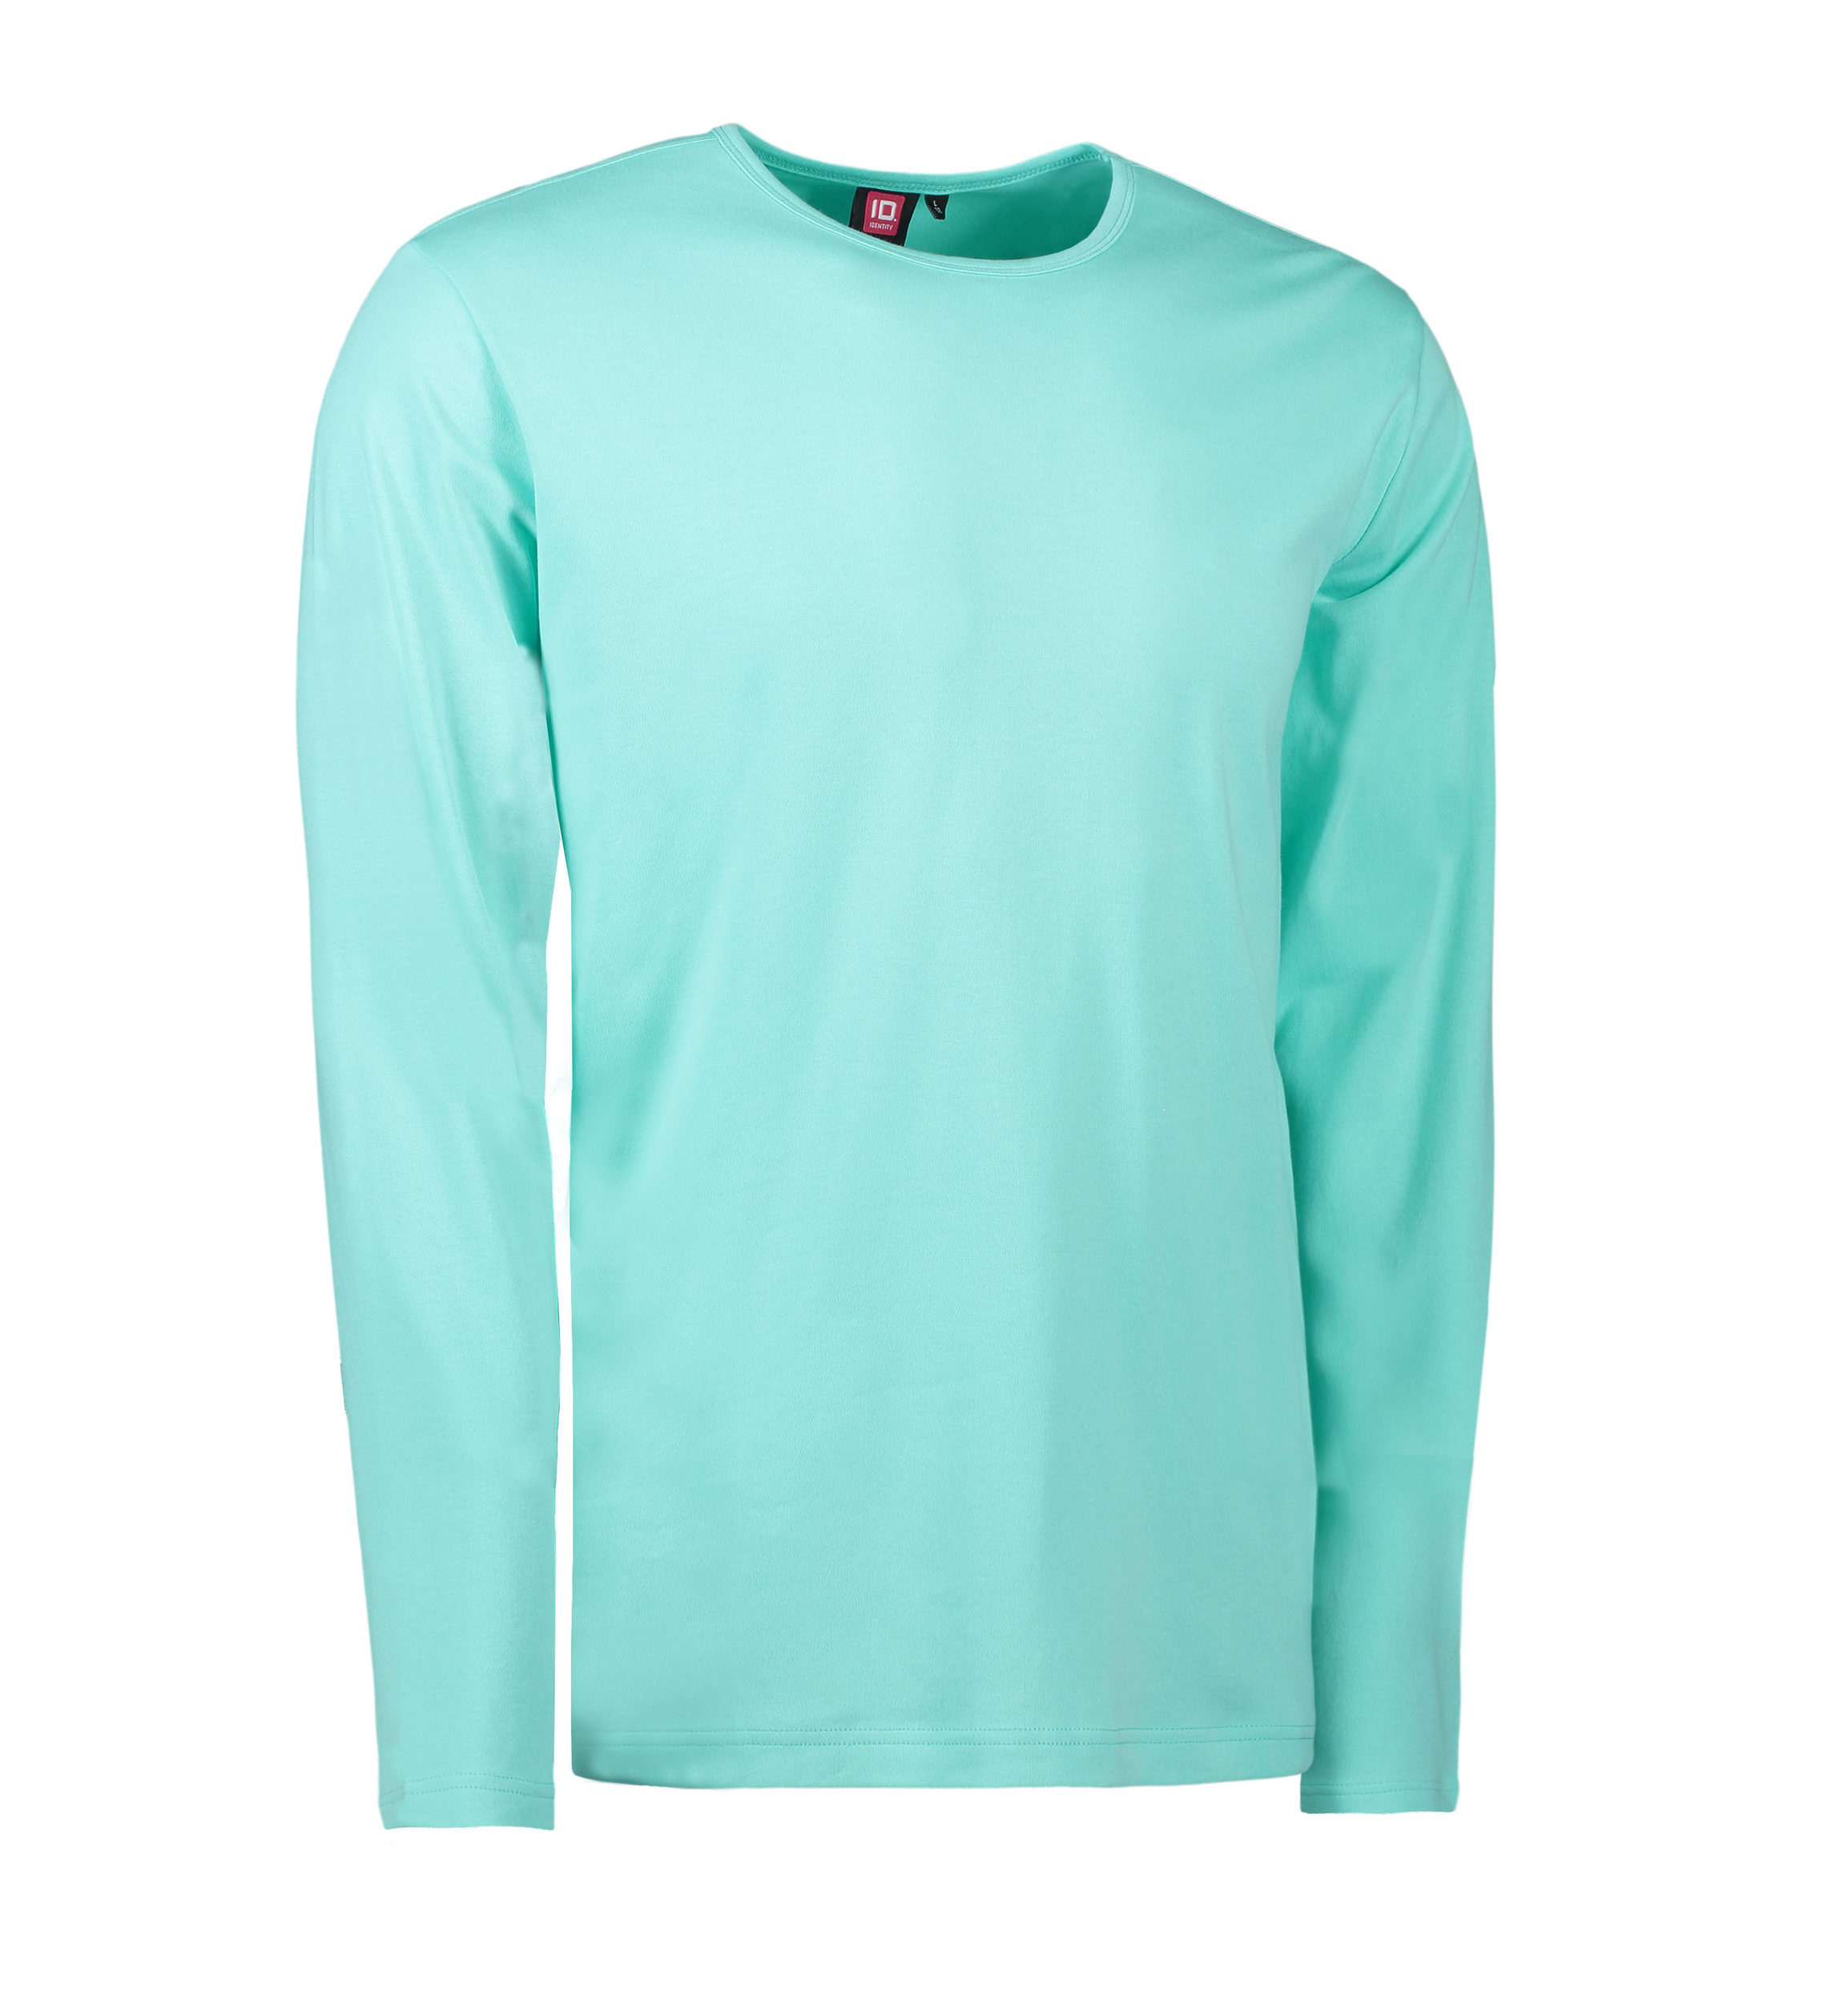 Billede af Mint farvet langærmet t-shirt til mænd - XL hos Sygeplejebutikken.dk